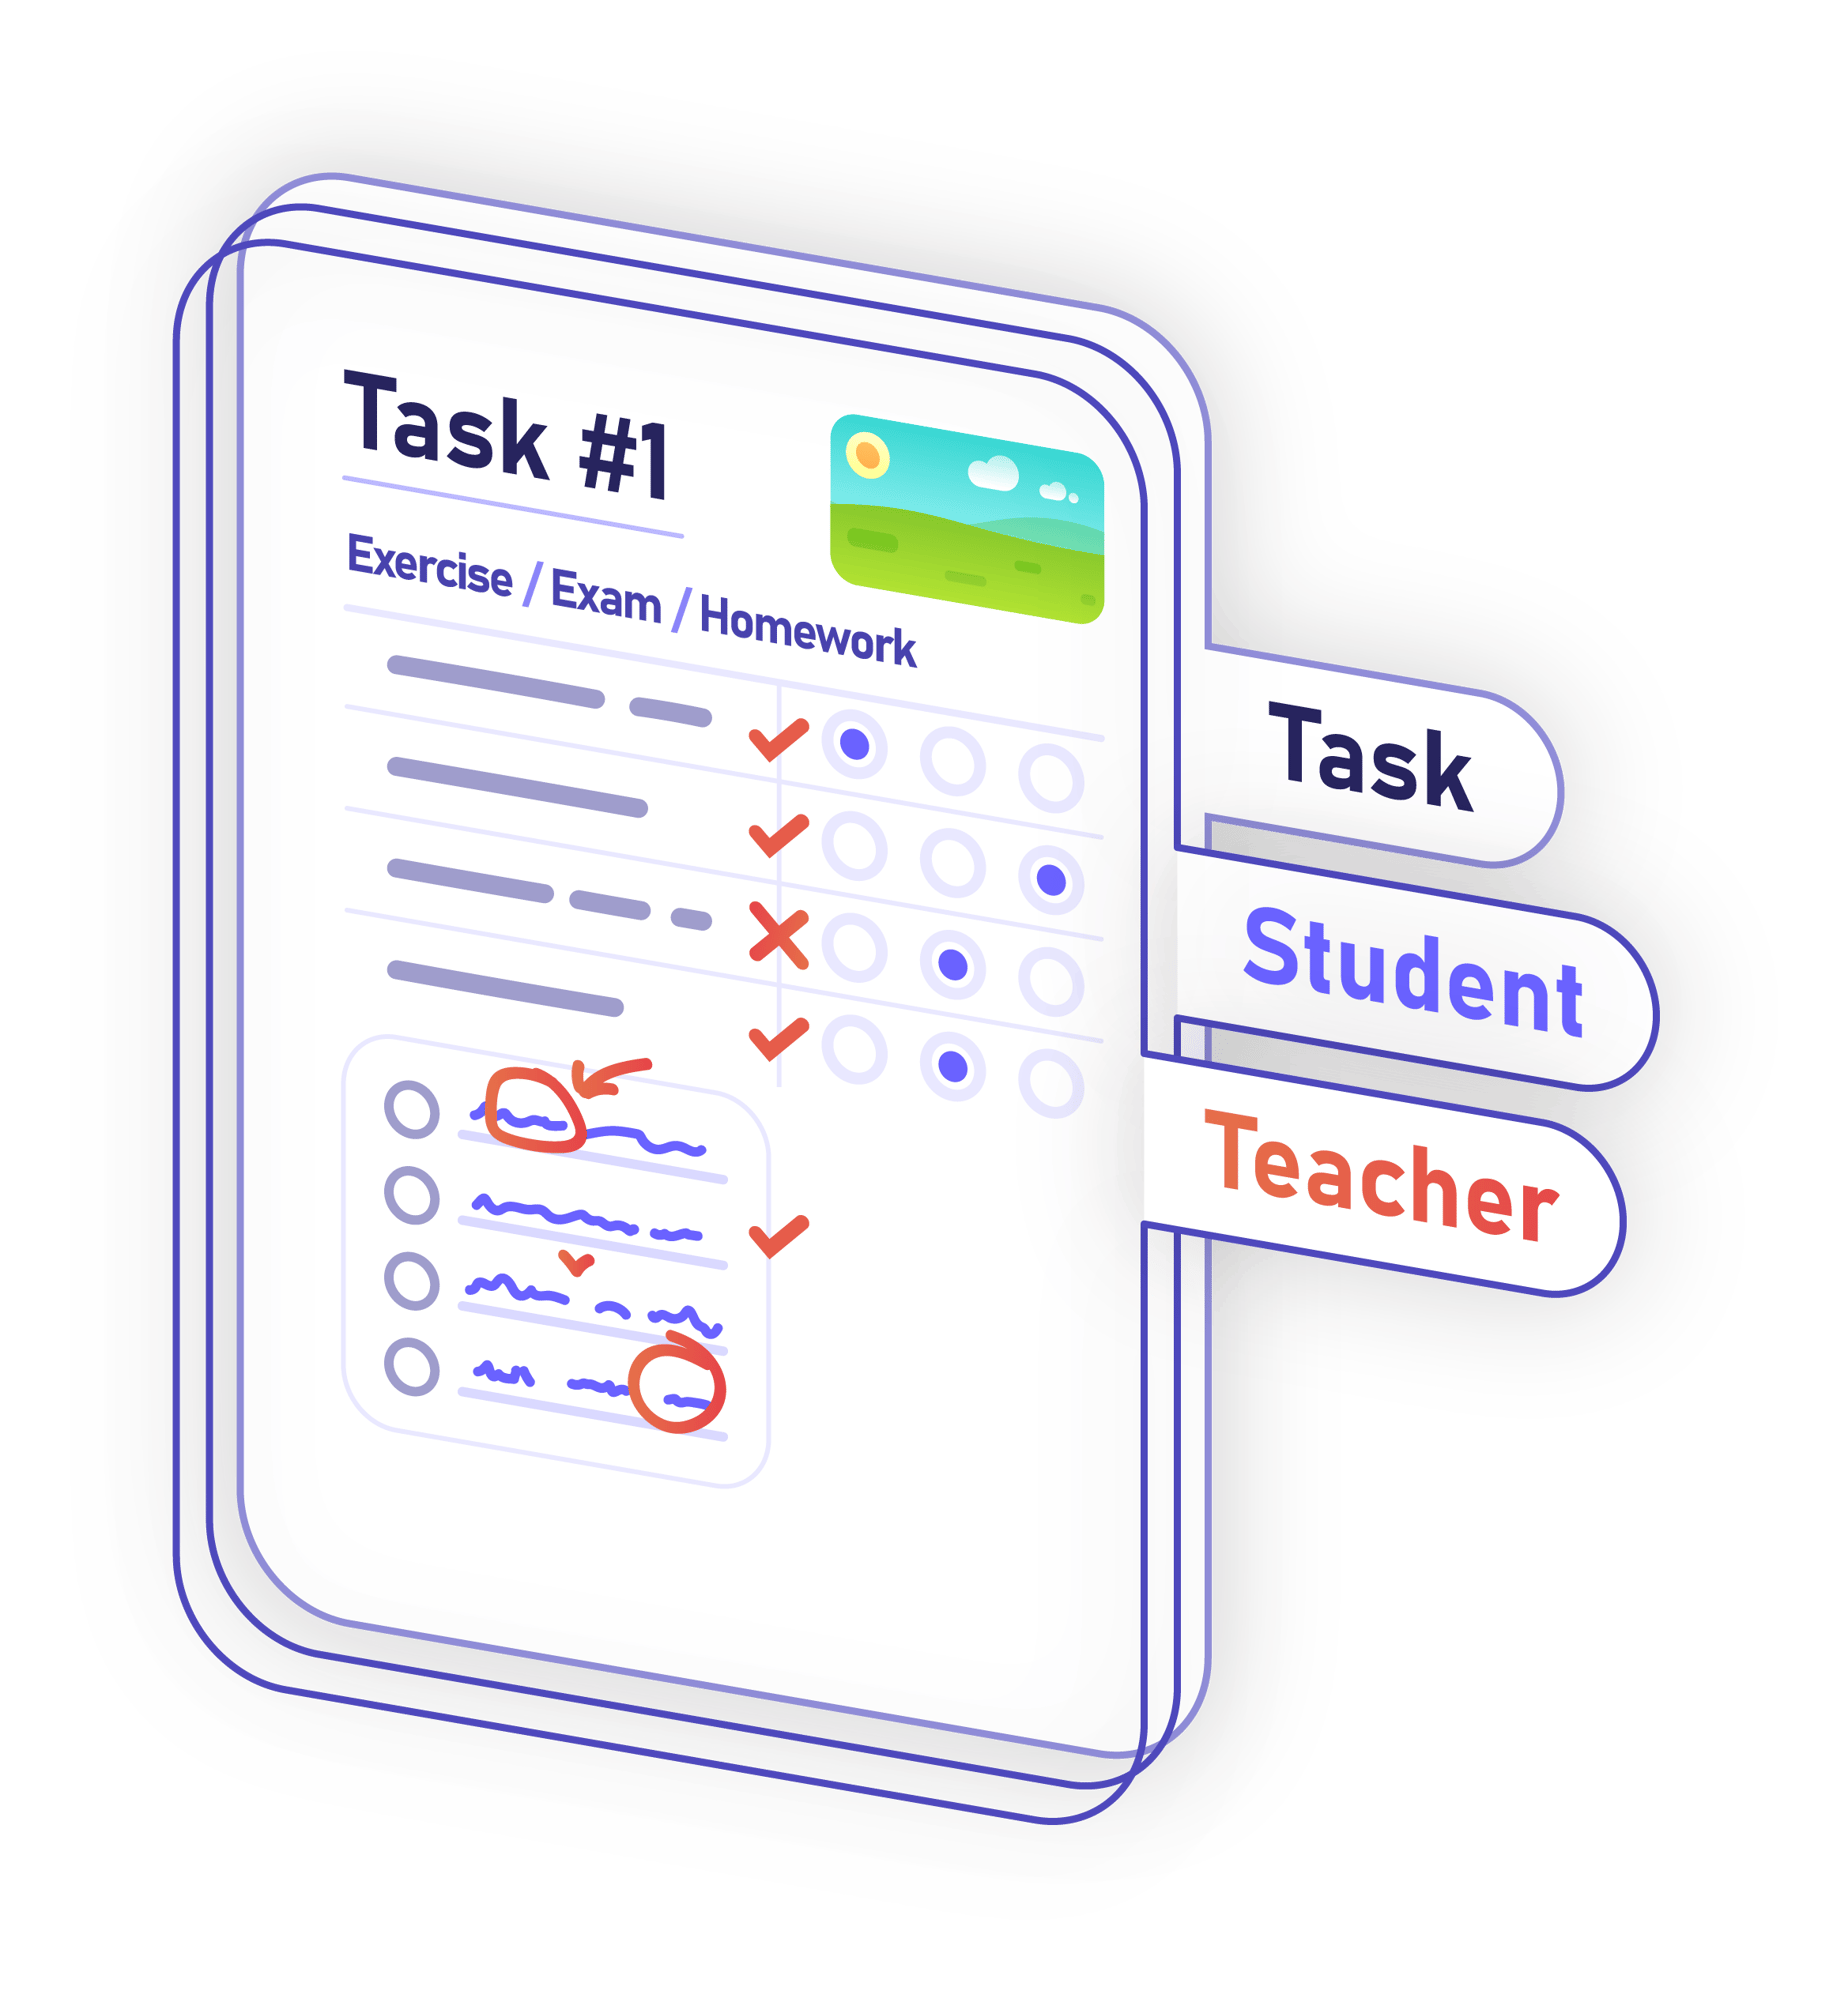 Task teacher student overlay together-1